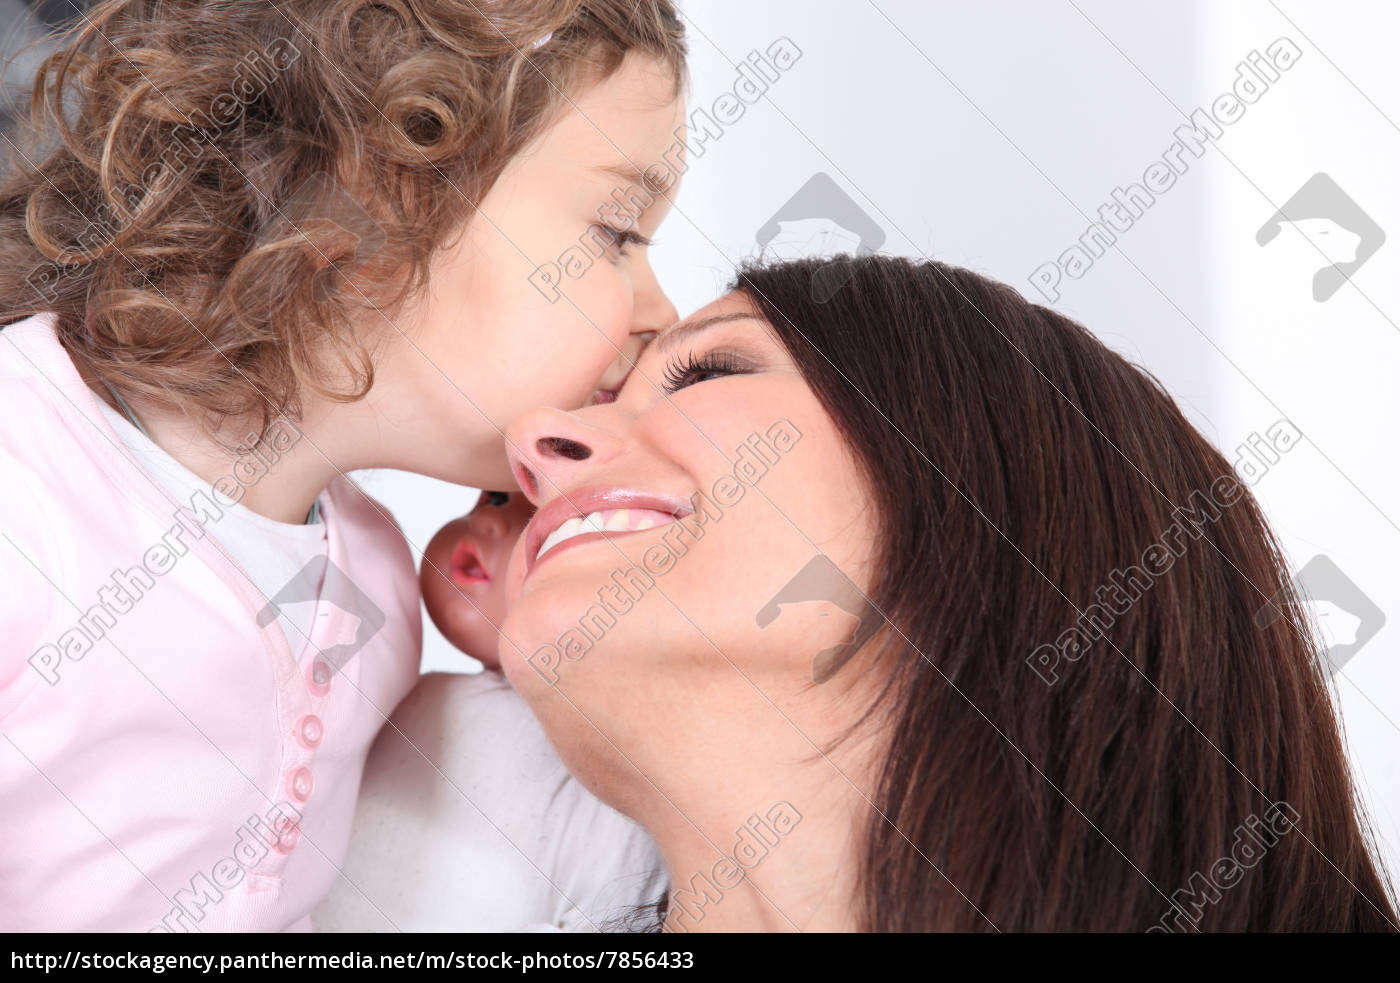 Лижет родной маме. Девочка целует маму. Девушка целует маму с языком. Мама целует дочку в губы. Мама целует дочку в губы с языком.